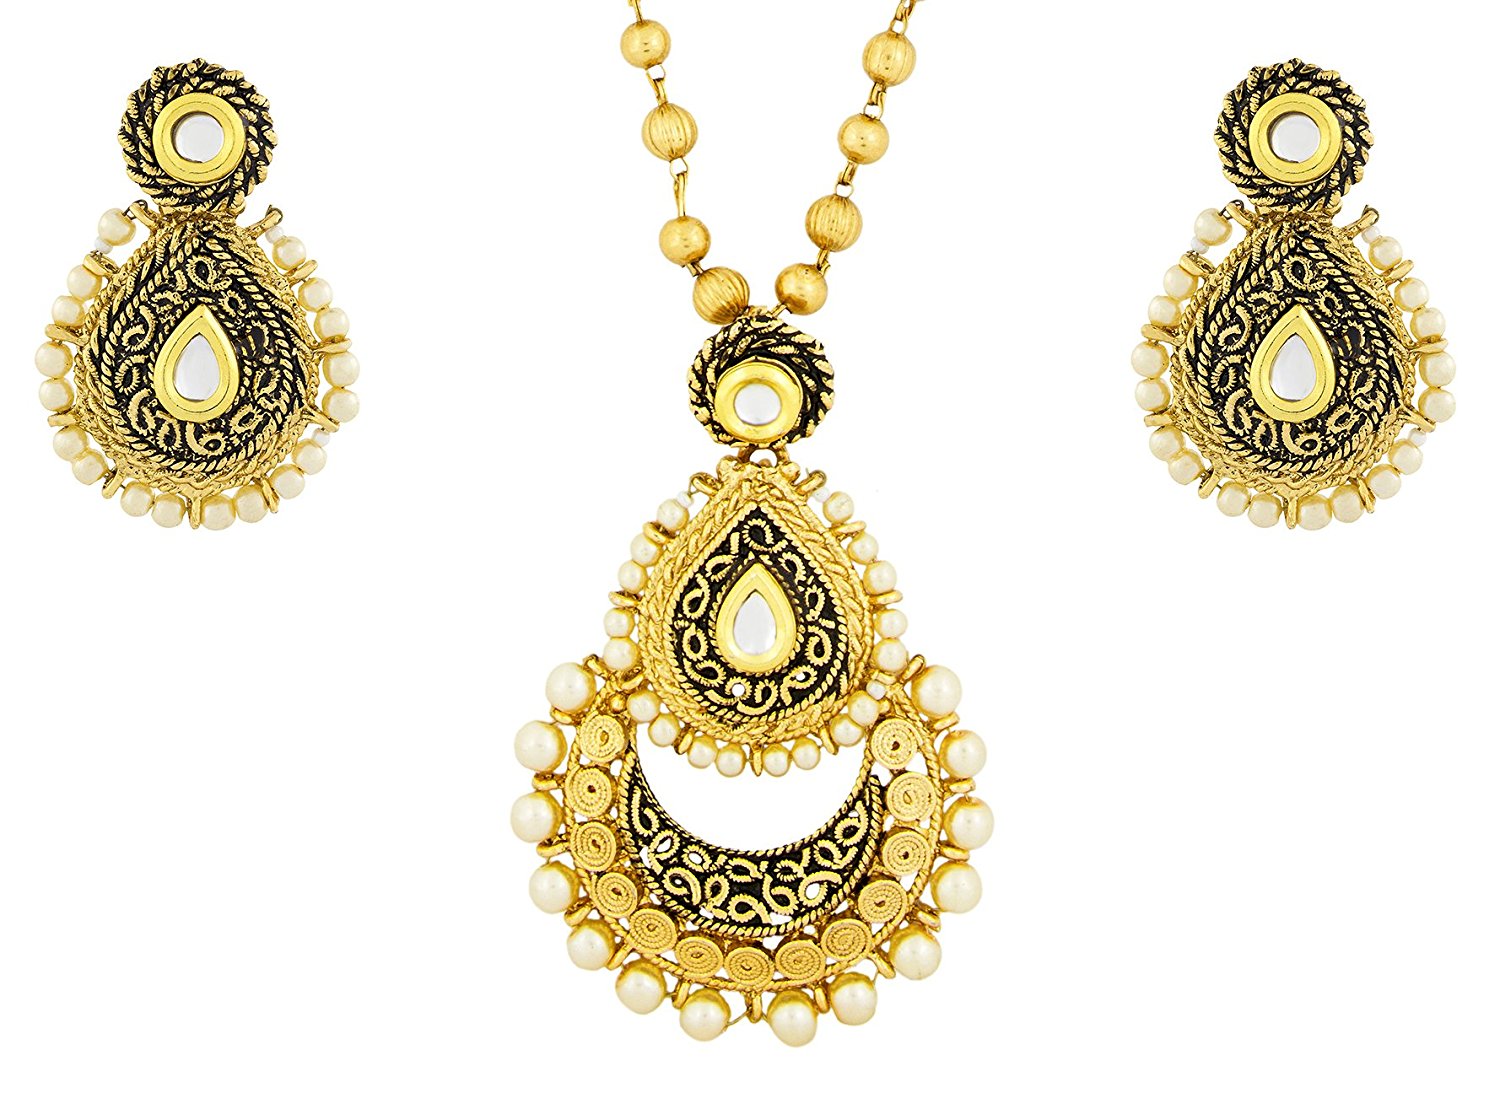 Rope Design Gold Brass Pendant Chain Pendant Earring Set For Women